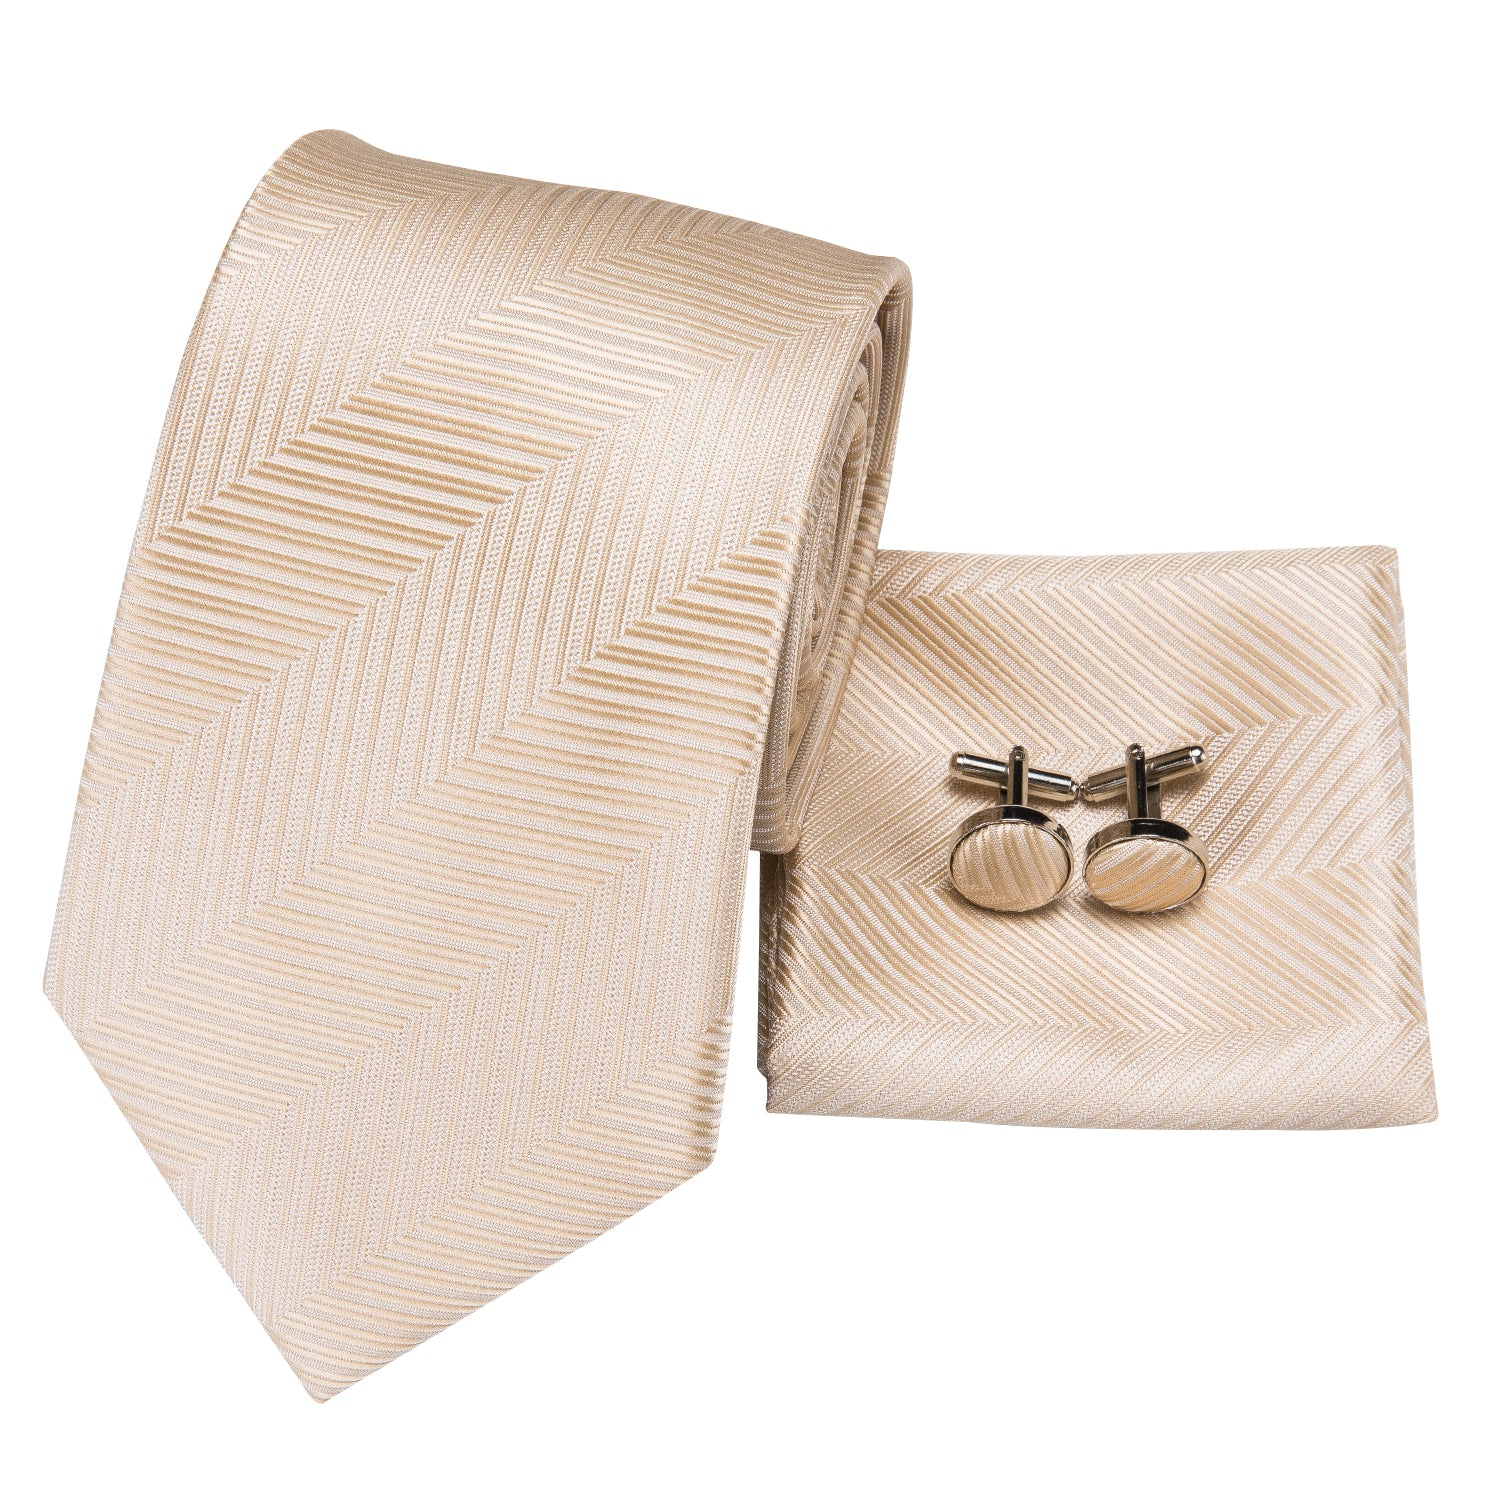 Champagne Necktie Beige Striped Tie Pocket Square Cufflinks Set